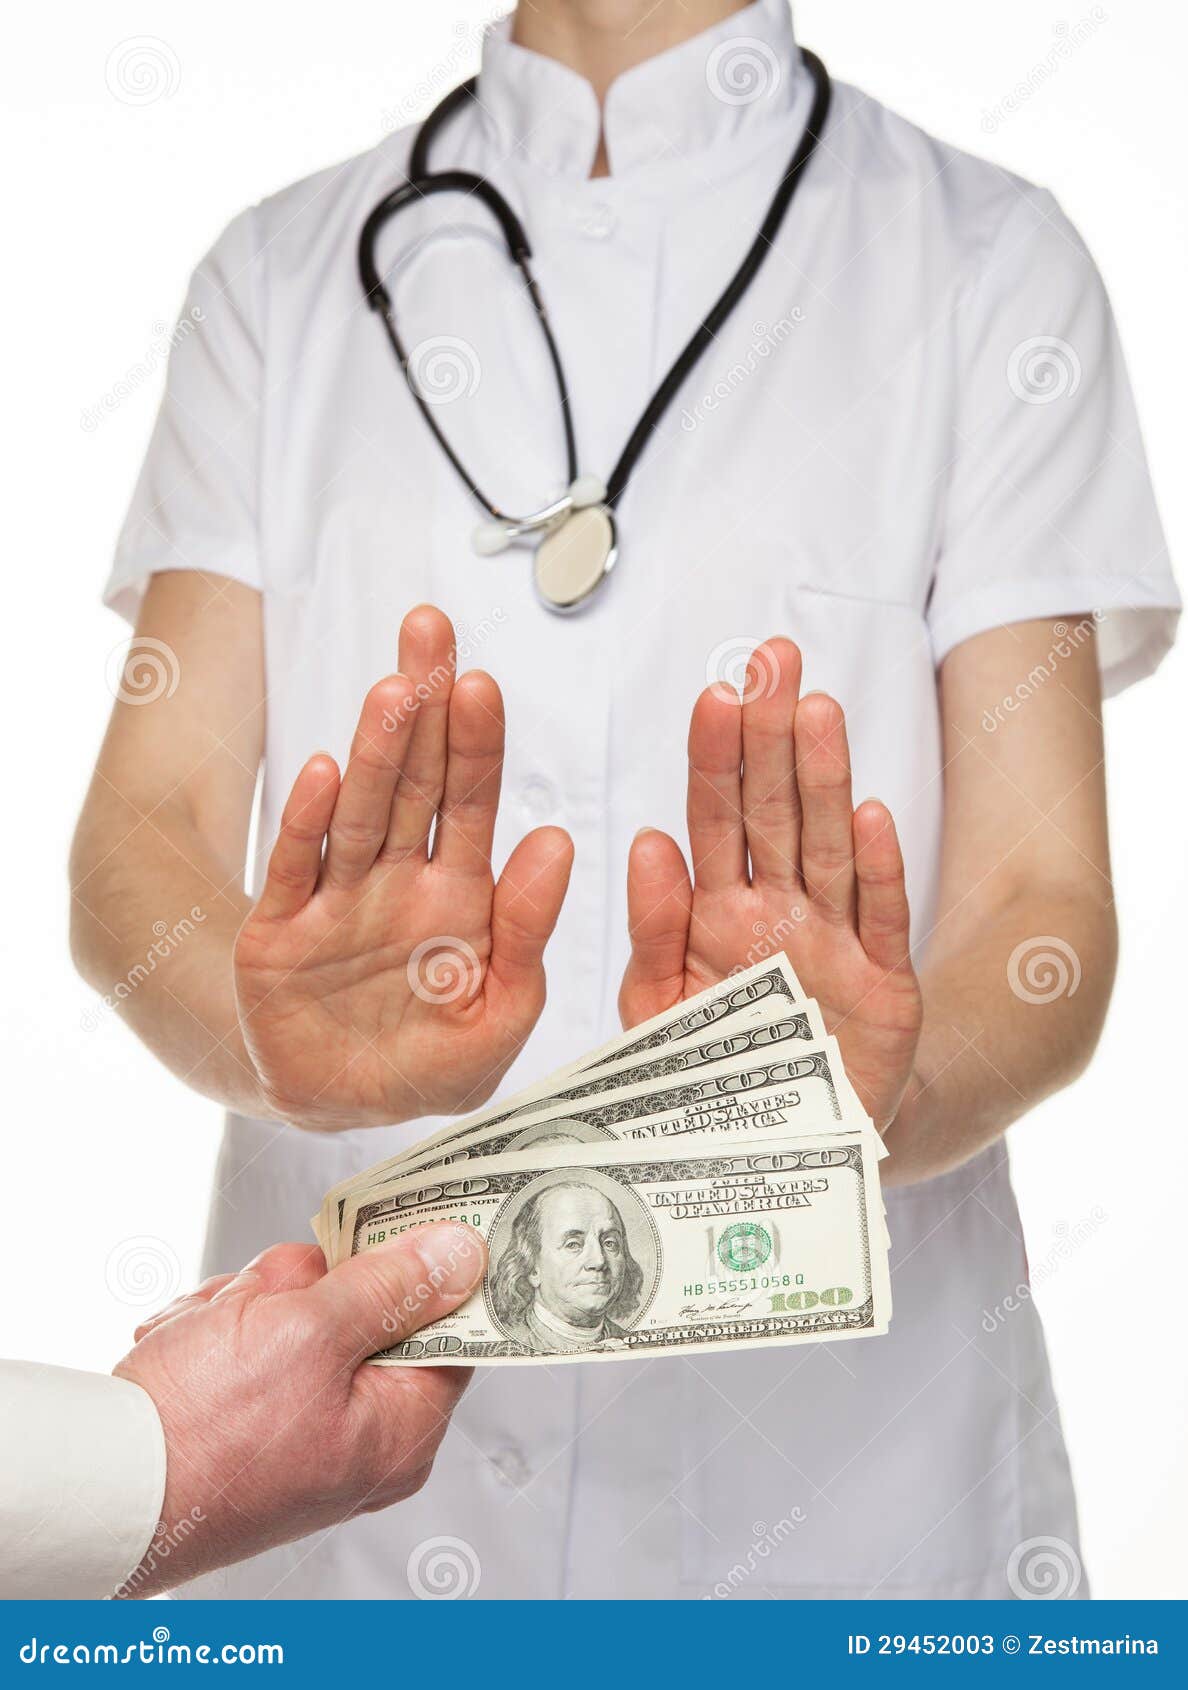 Деньги врачам в больнице